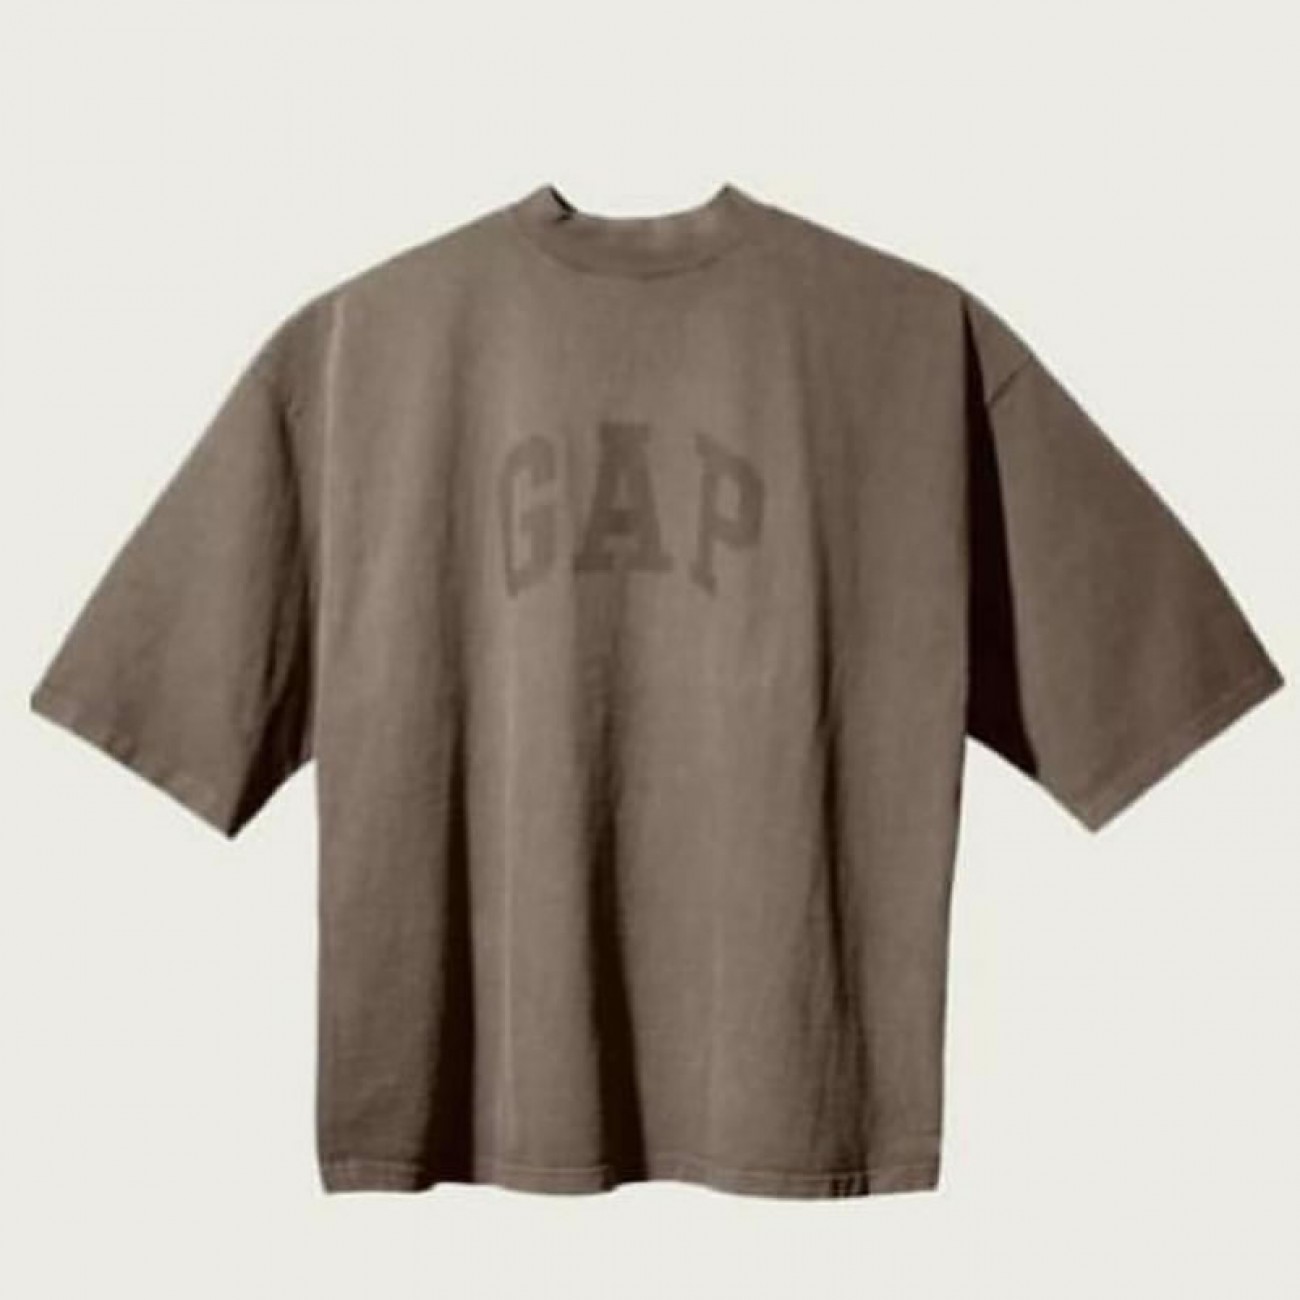 Yeezy x Gap x Balen-ciaga Tee Tshirt